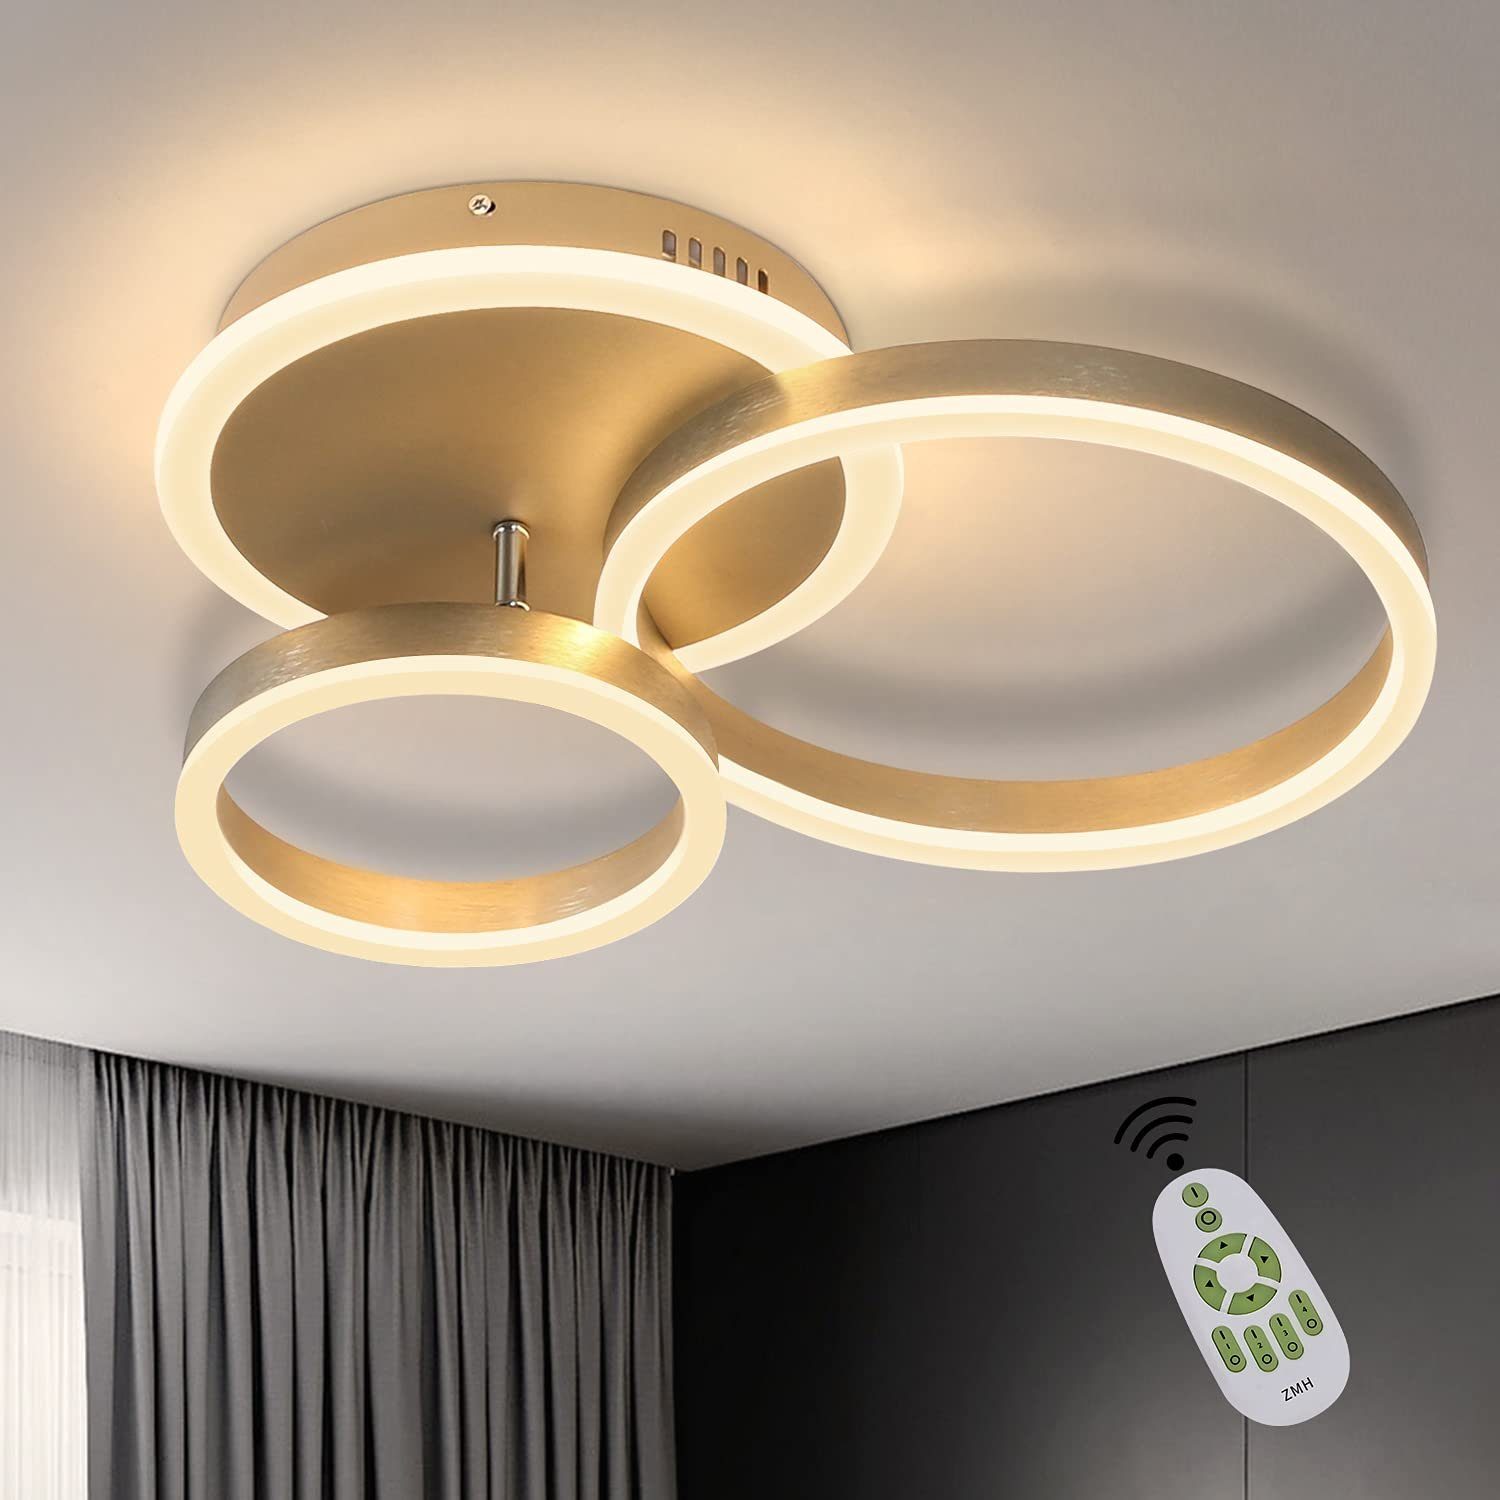 LED Decken Lampe Tages-Licht Küchen DIMMER Fernbedienung Holz Design Leuchte 